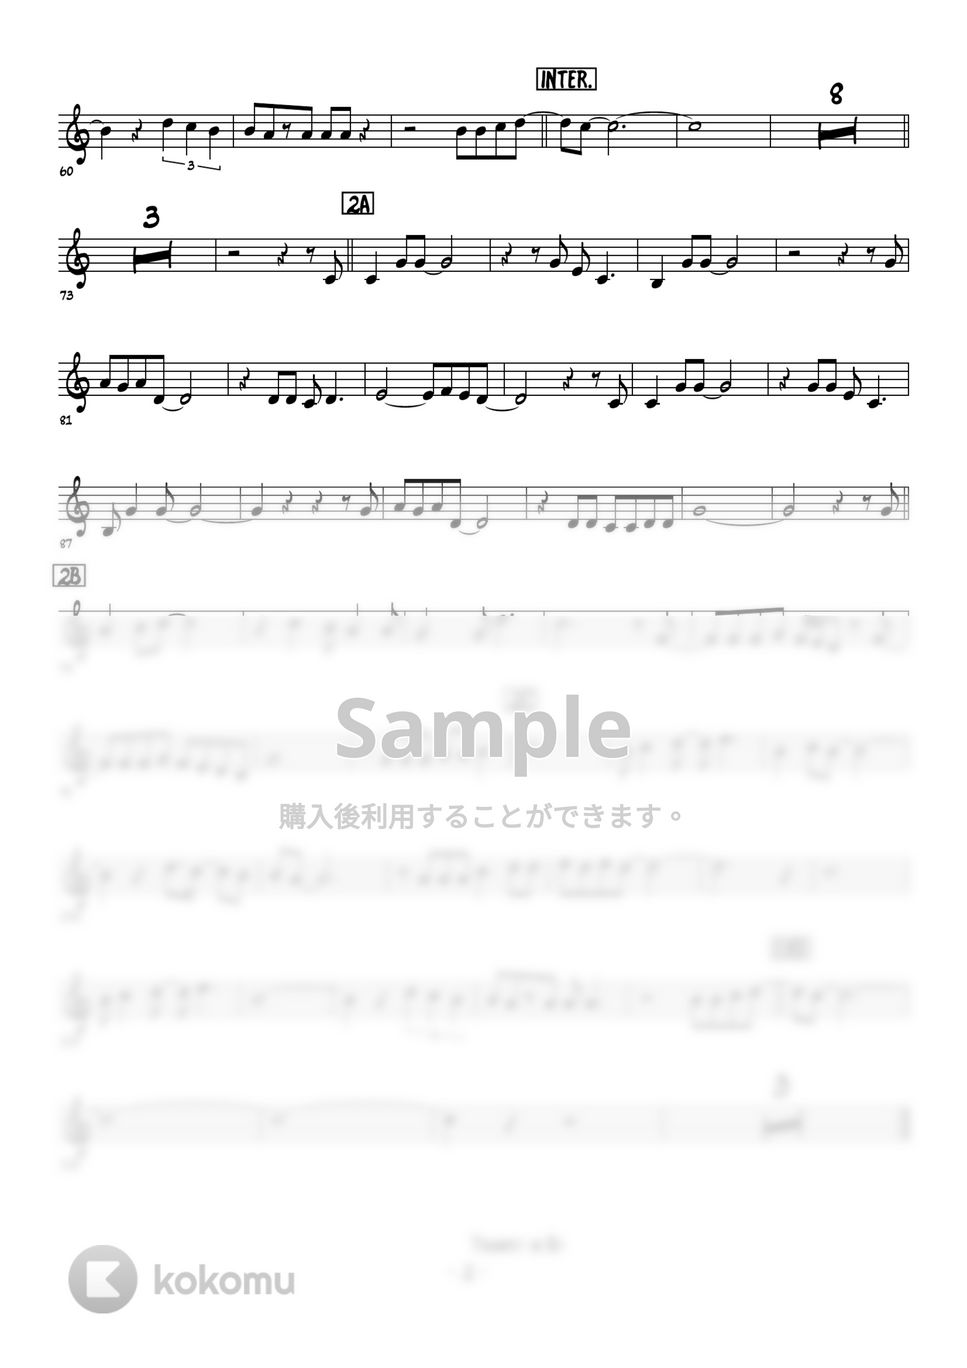 松田聖子 - 青い珊瑚礁 (メロディー楽譜) by 高田将利